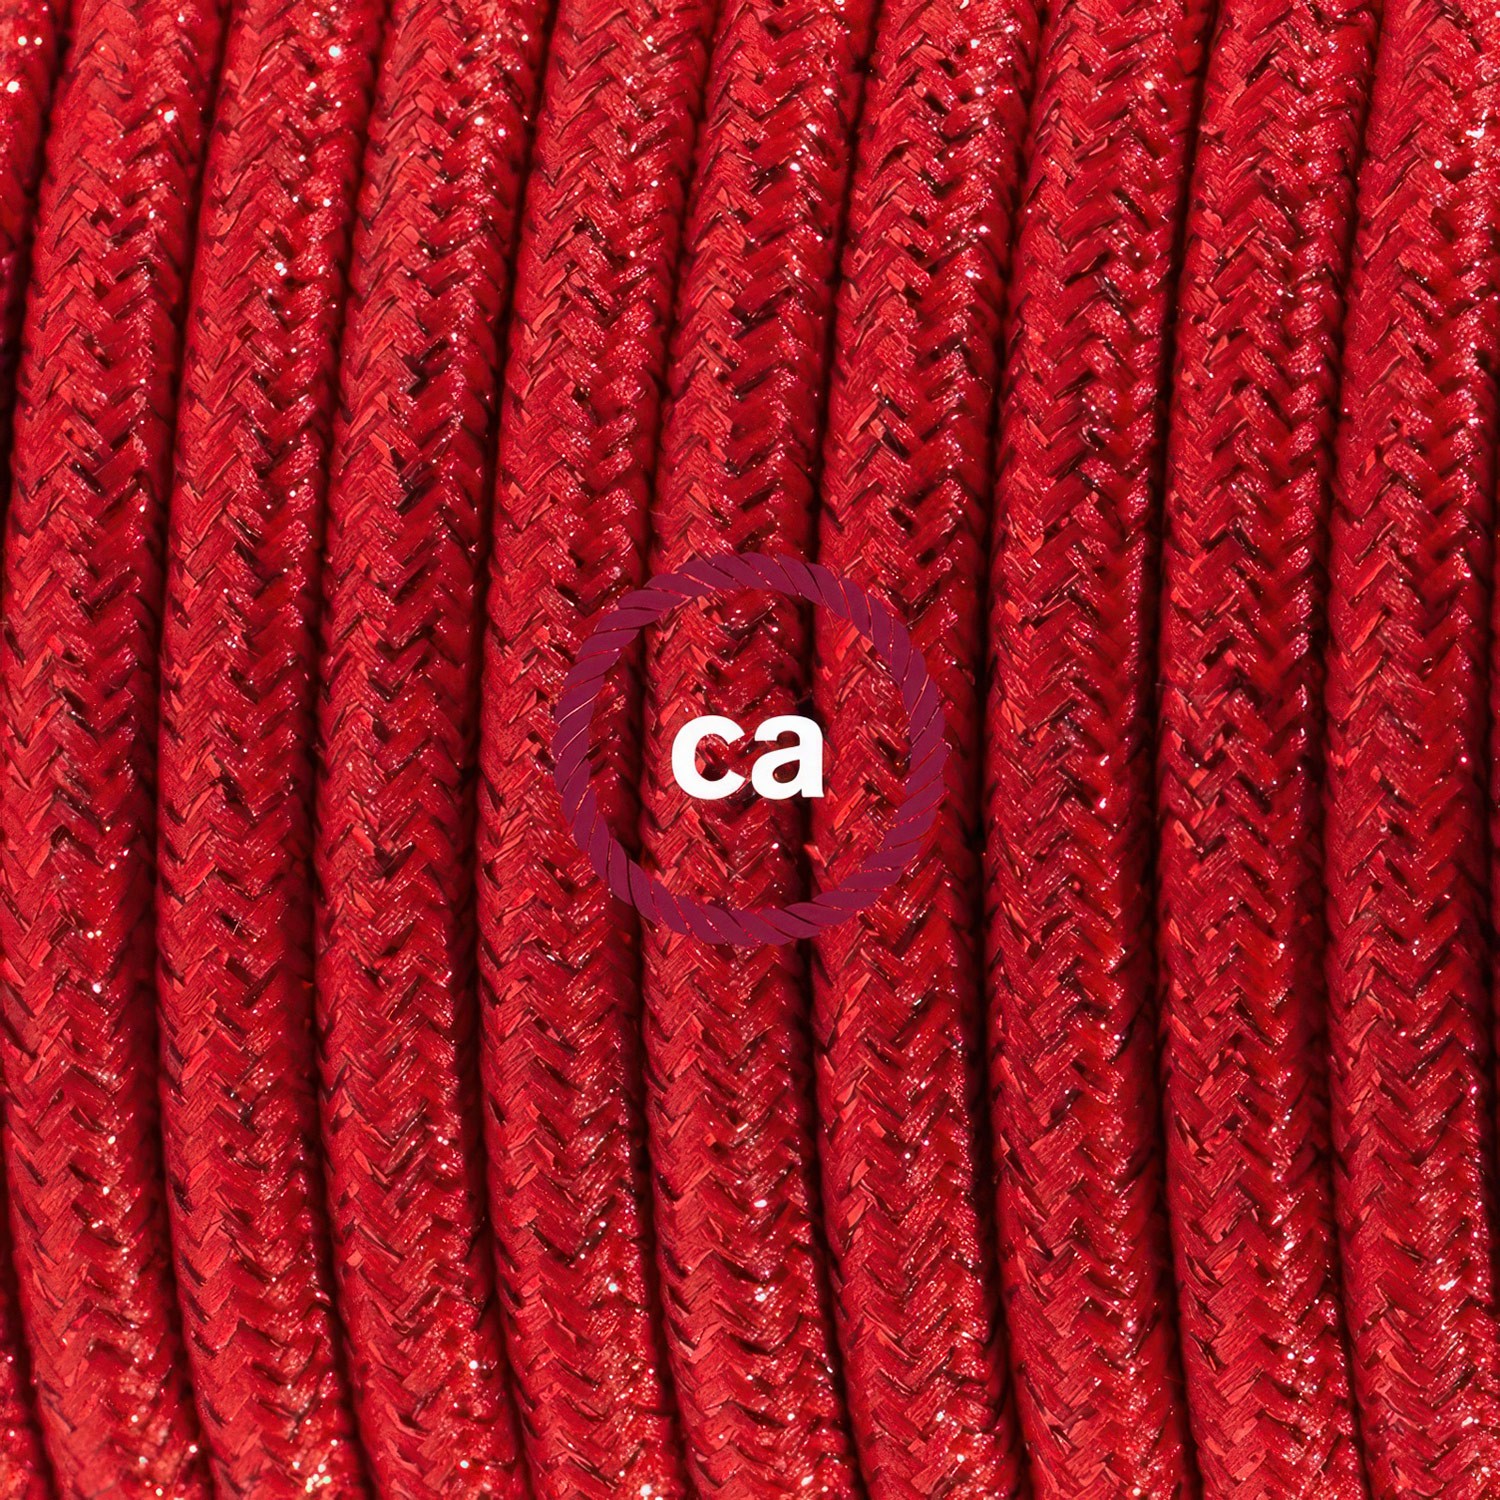 Cableado para lámpara, cable RL09 Efecto Seda Glitter Rojo 1,8m. Elige tu el color de la clavija y del interruptor!